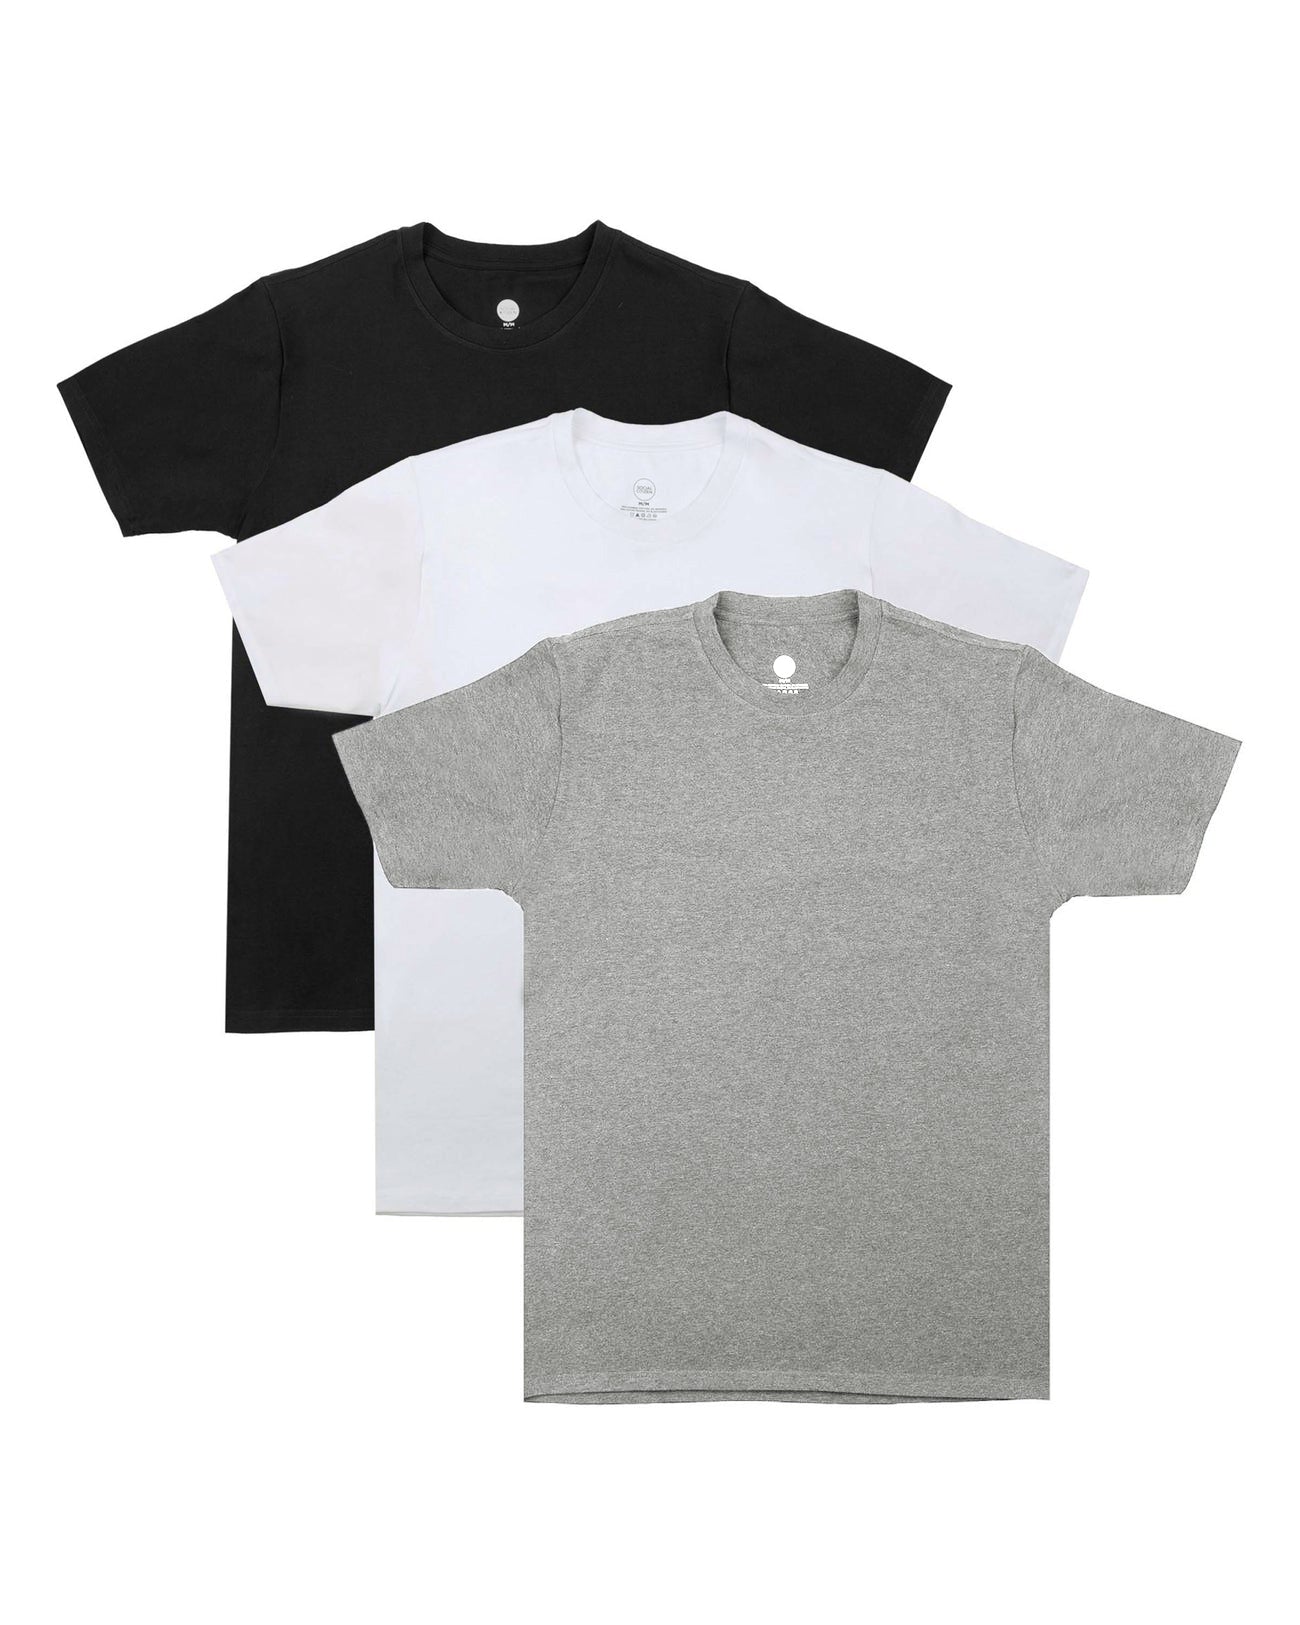 Black & White Tee Shirt 3-Pack